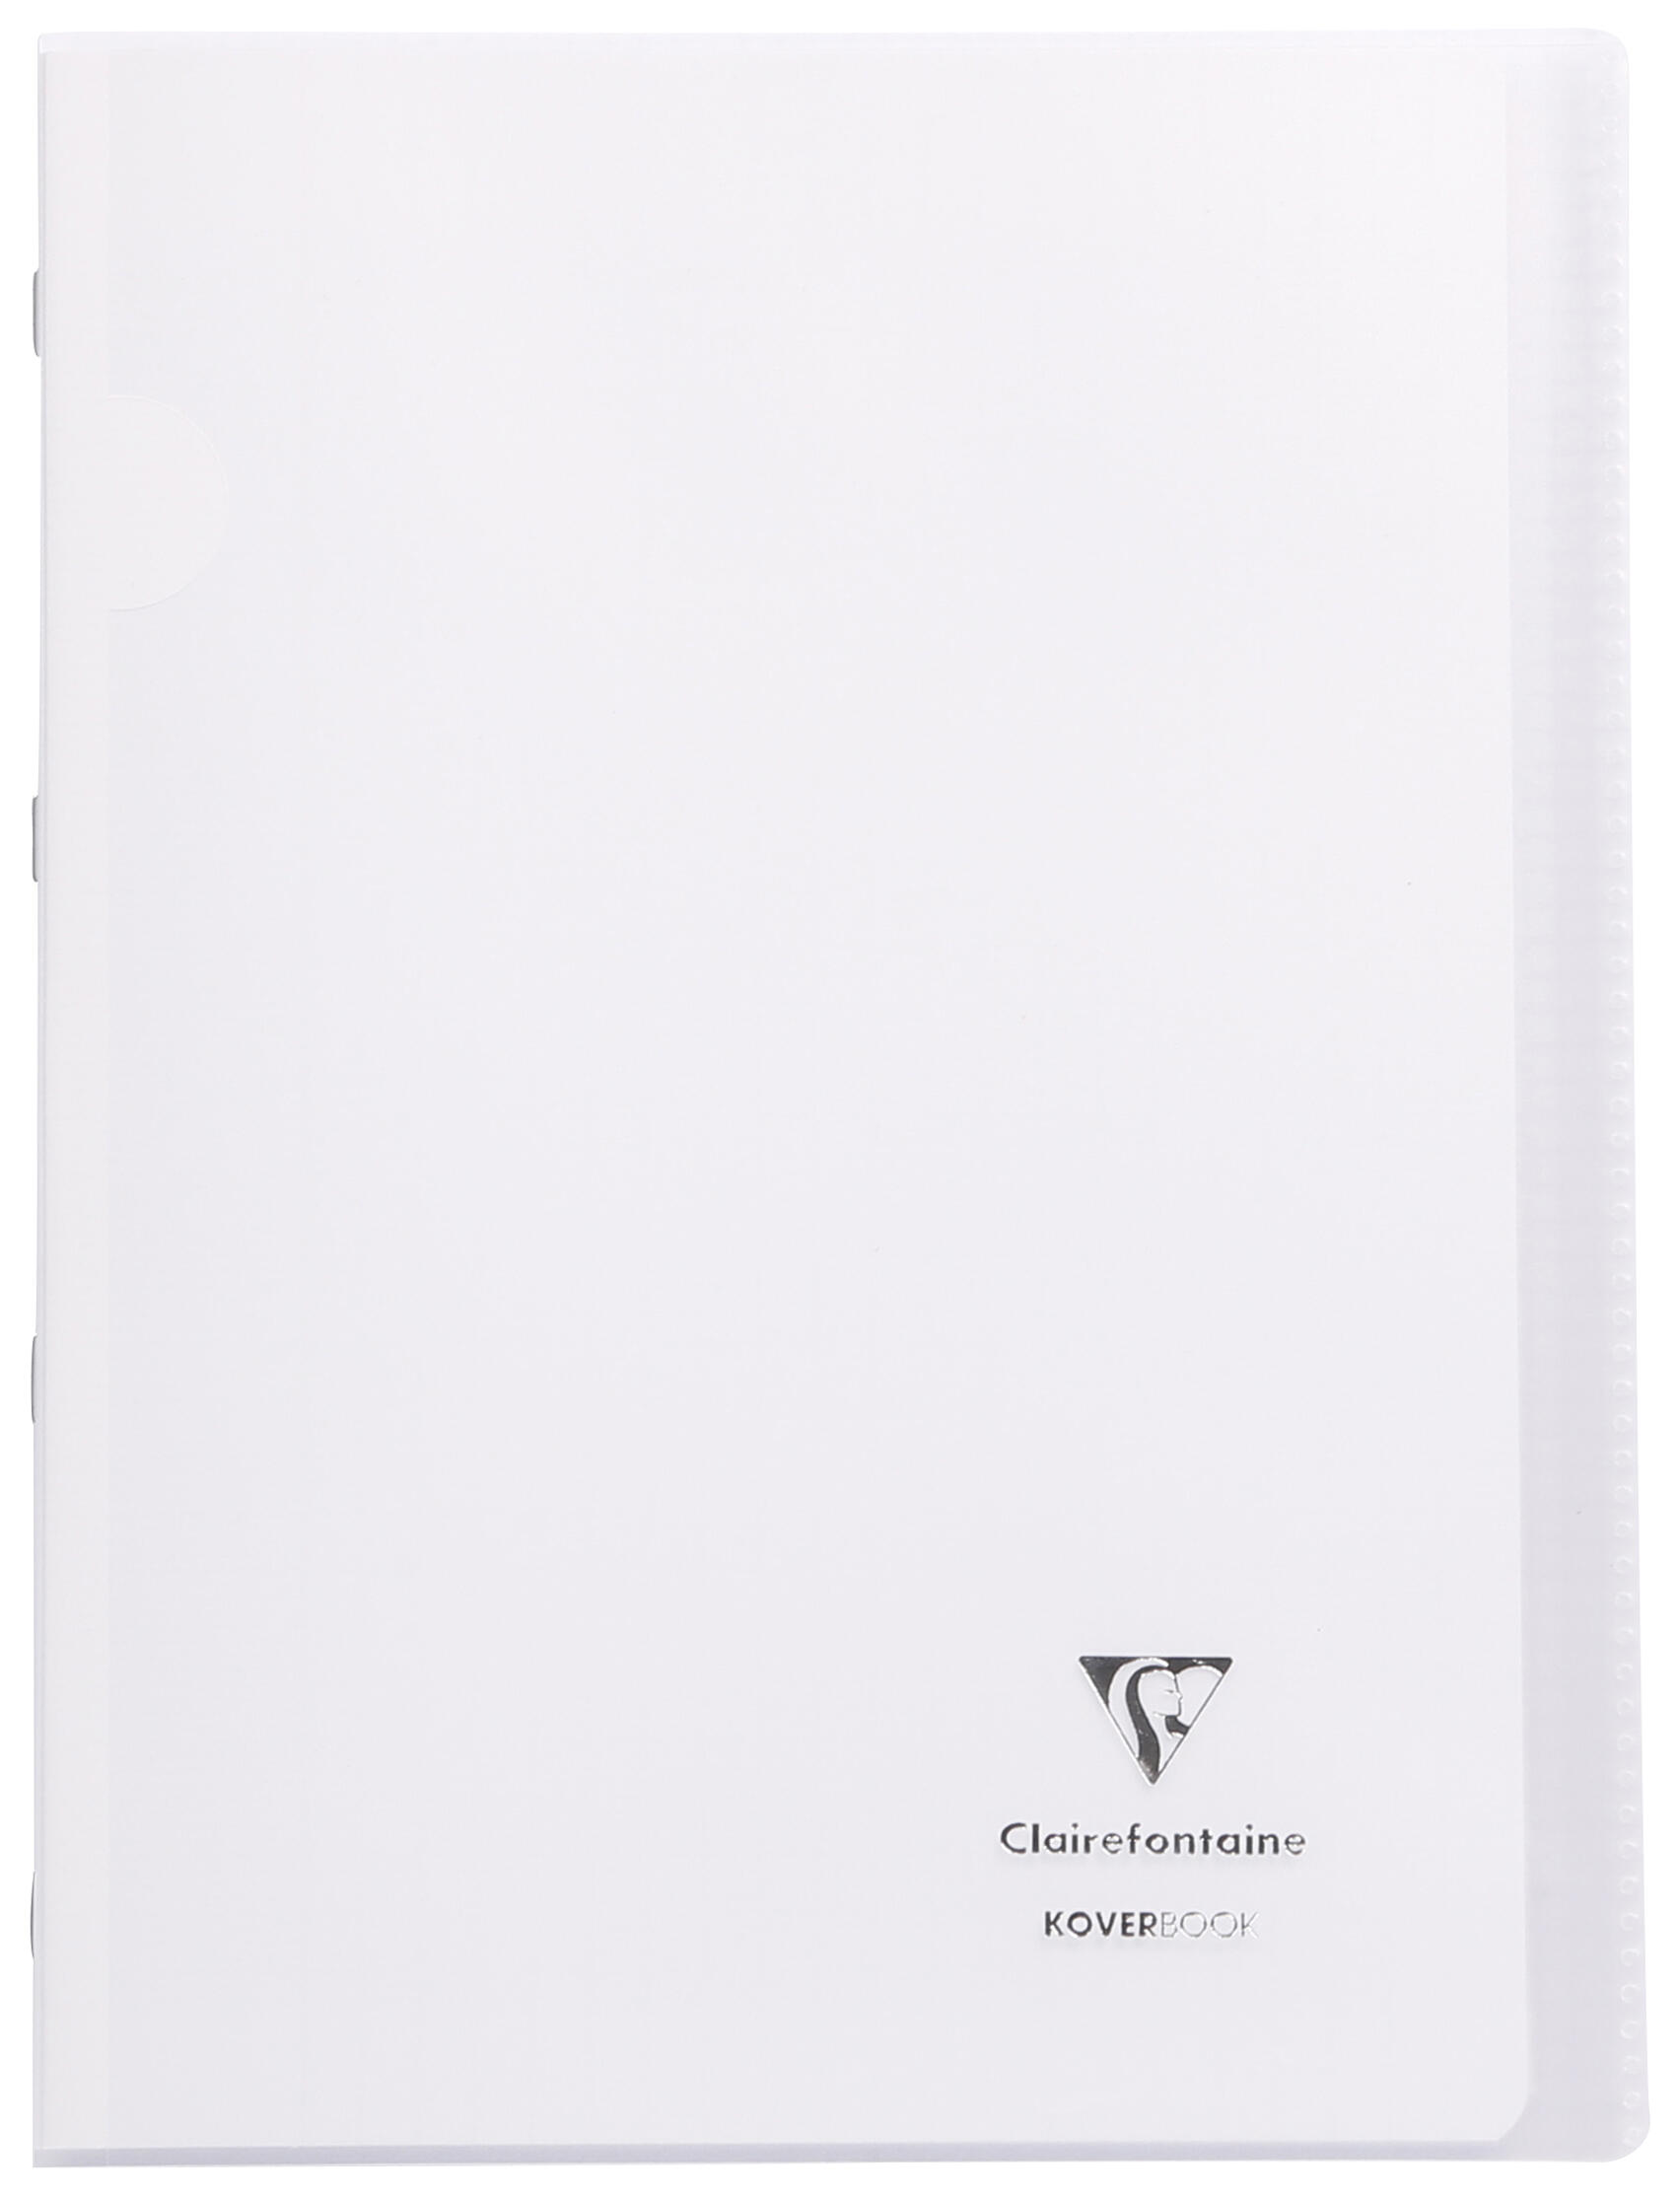 Piqure  21x29,7 - 90g - 96 p - Séyès - Koverbook couverture transparente incolore